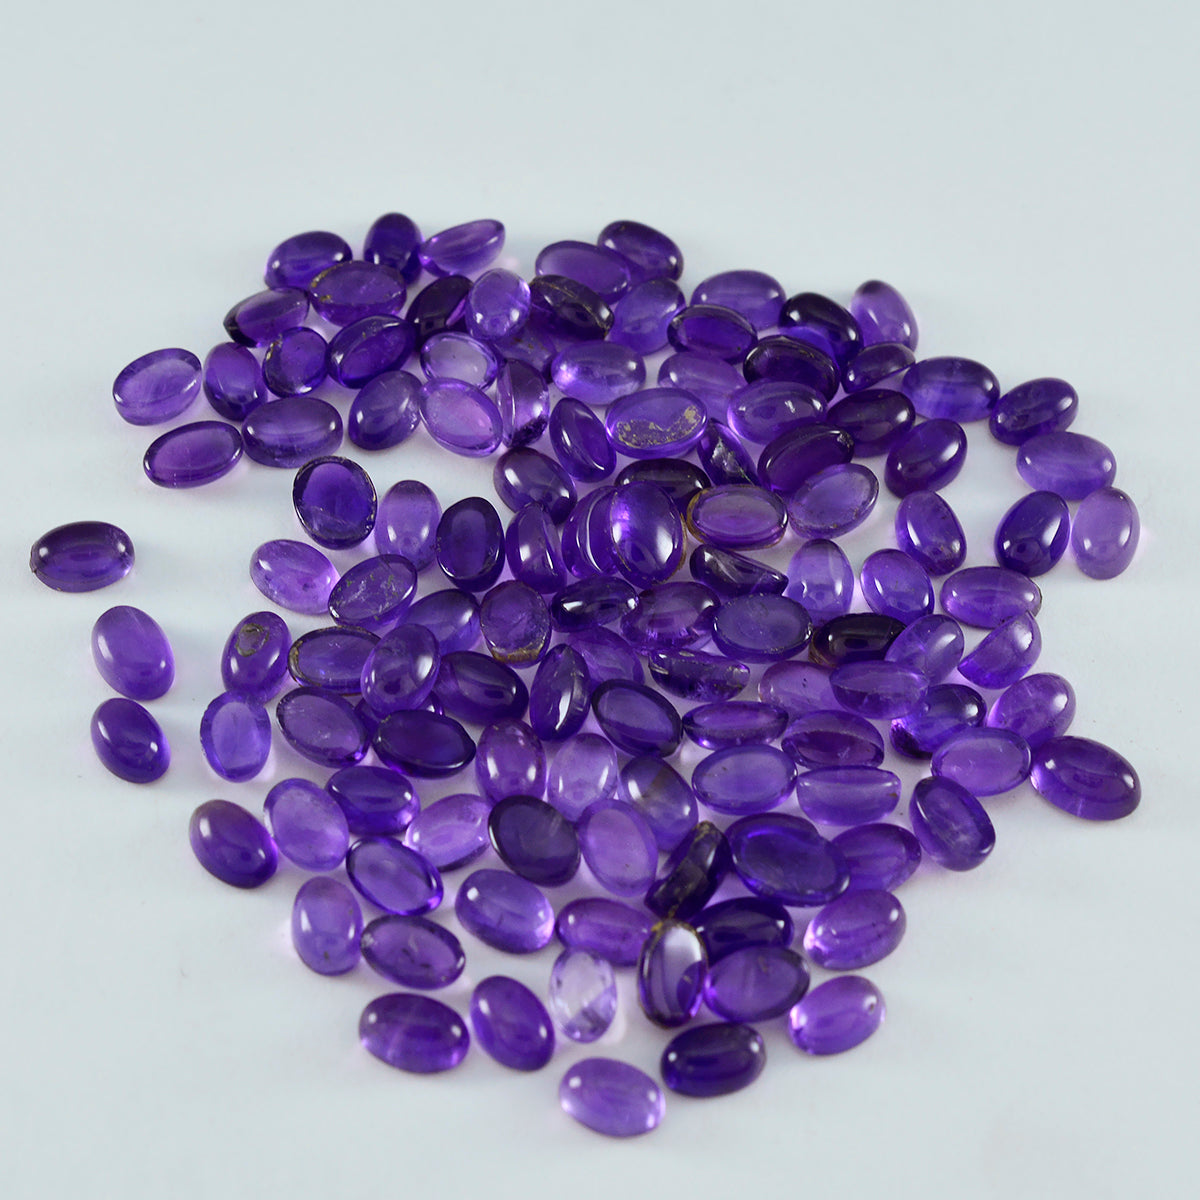 Riyogems 1 Stück lila Amethyst-Cabochon, 4 x 6 mm, ovale Form, hochwertiger Stein